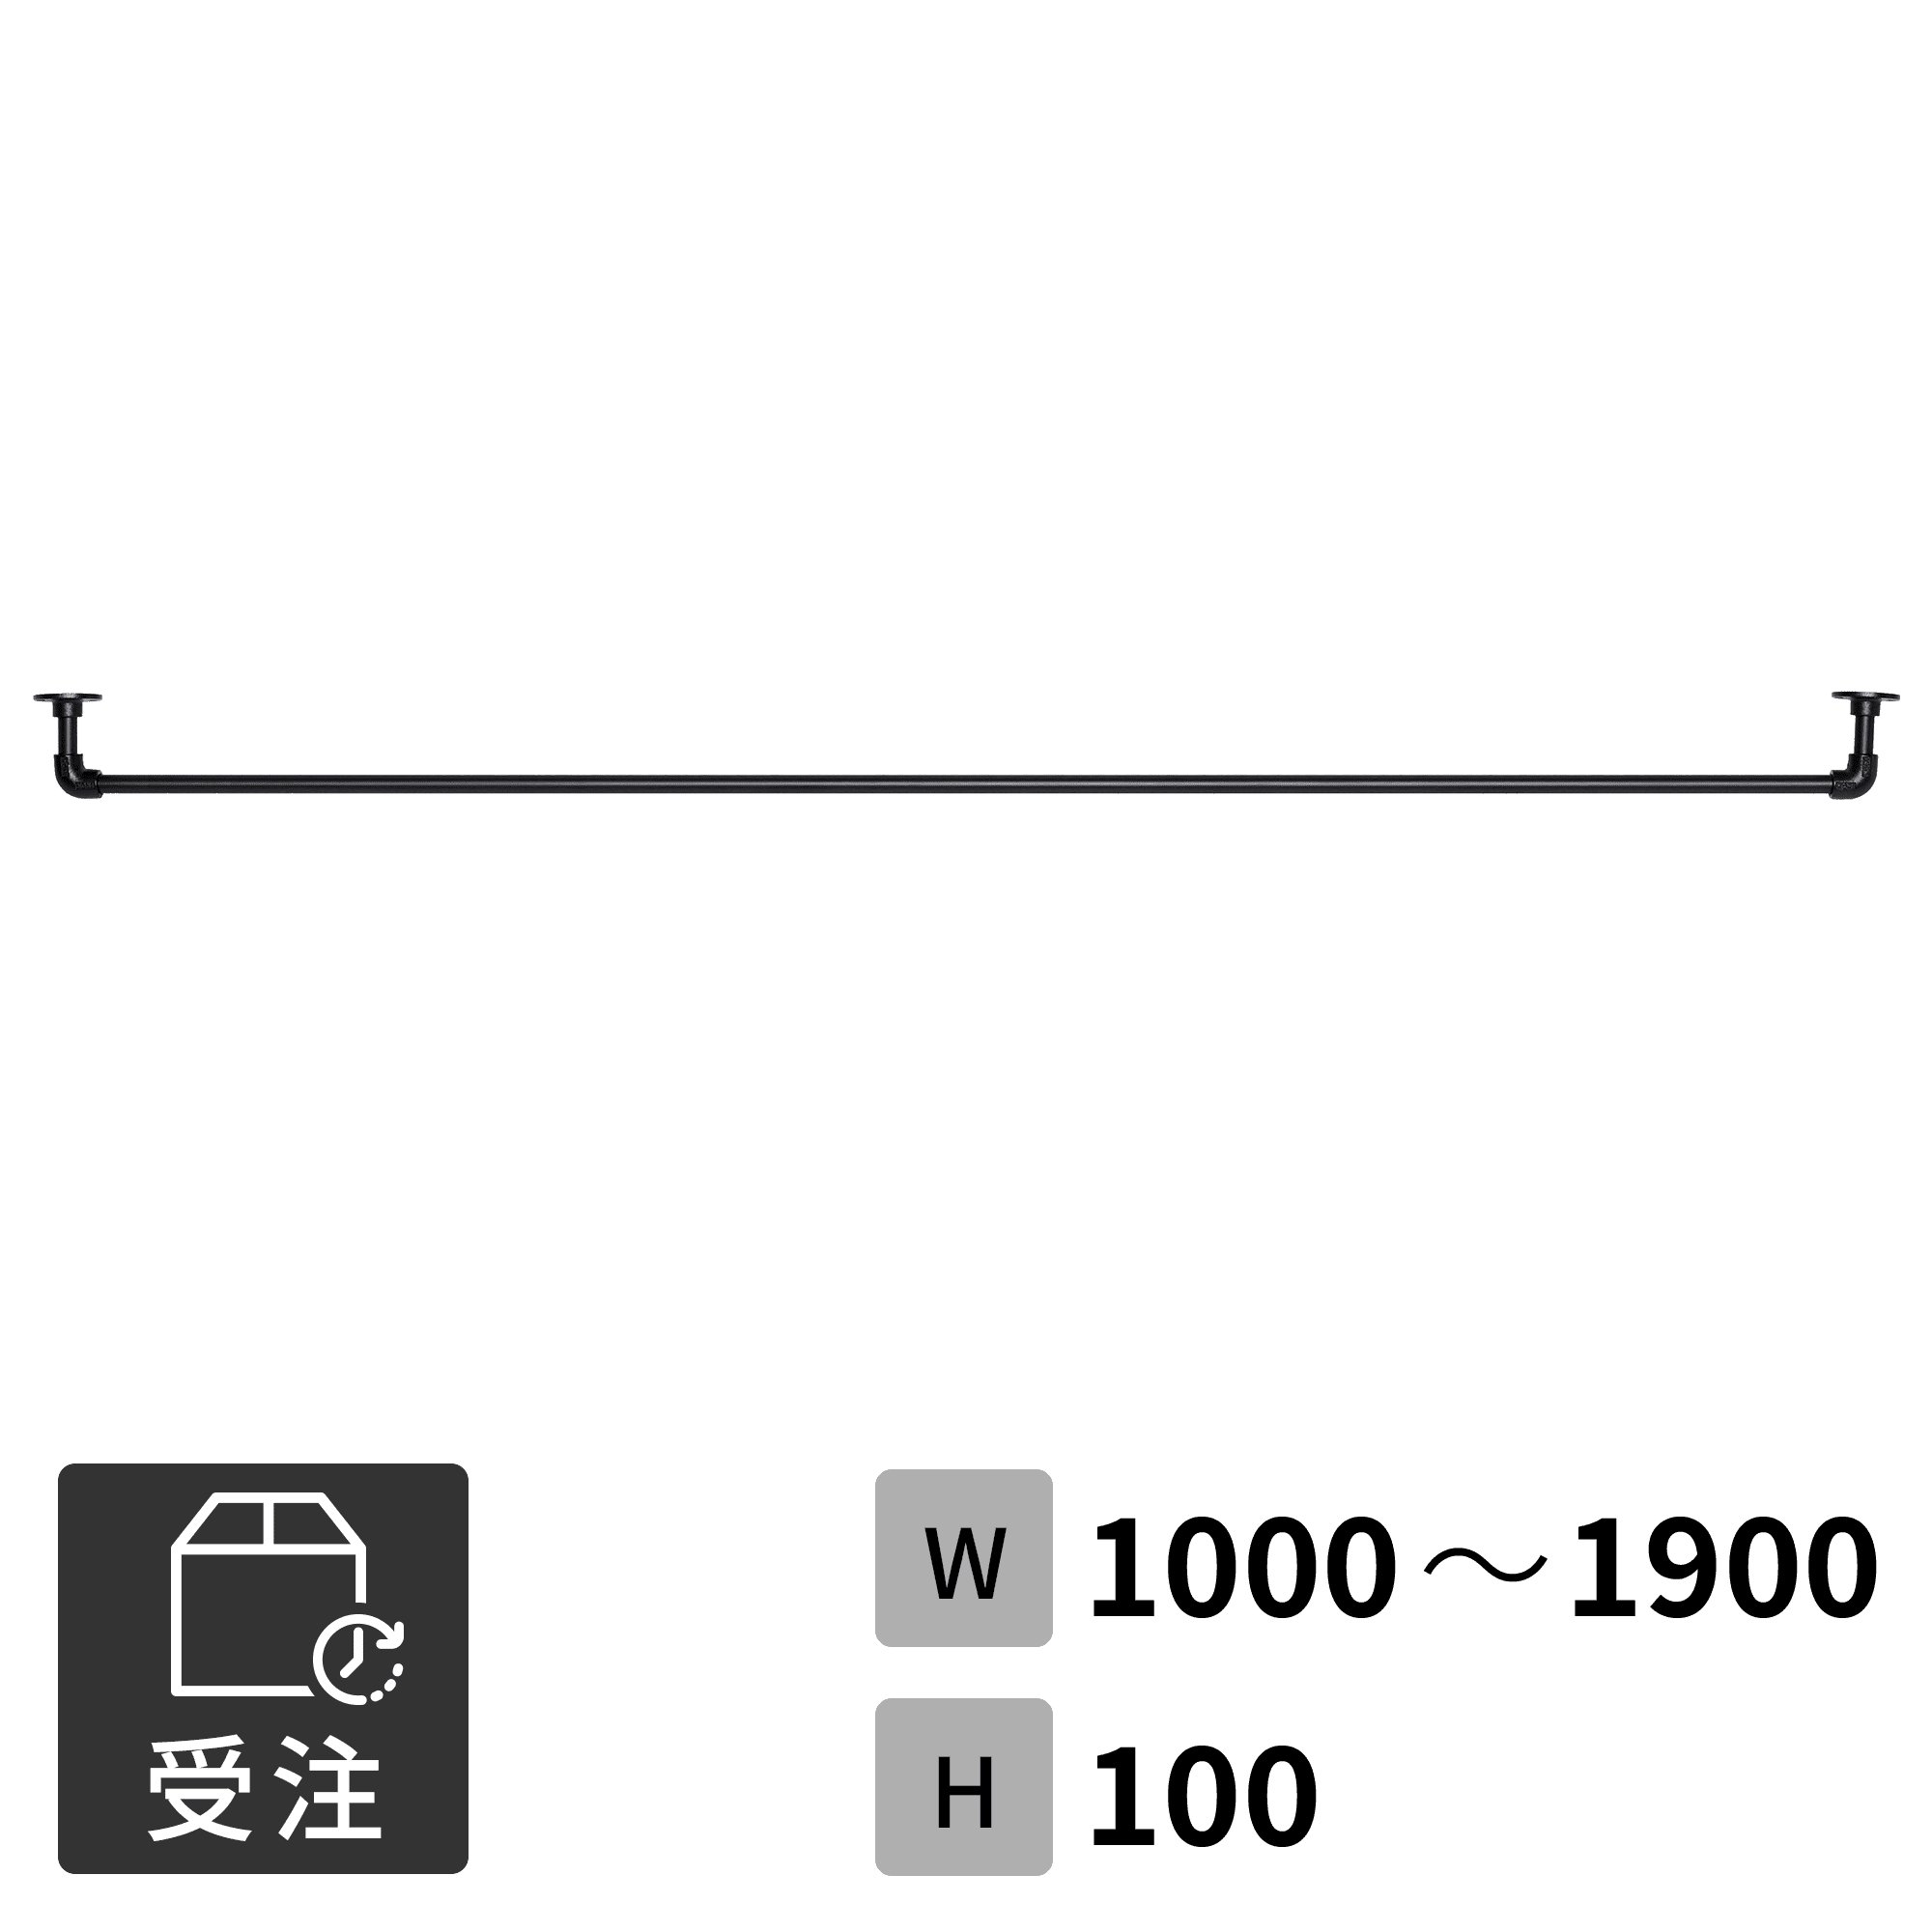 アイアンハンガーパイプ コの字型-棚下吊タイプ